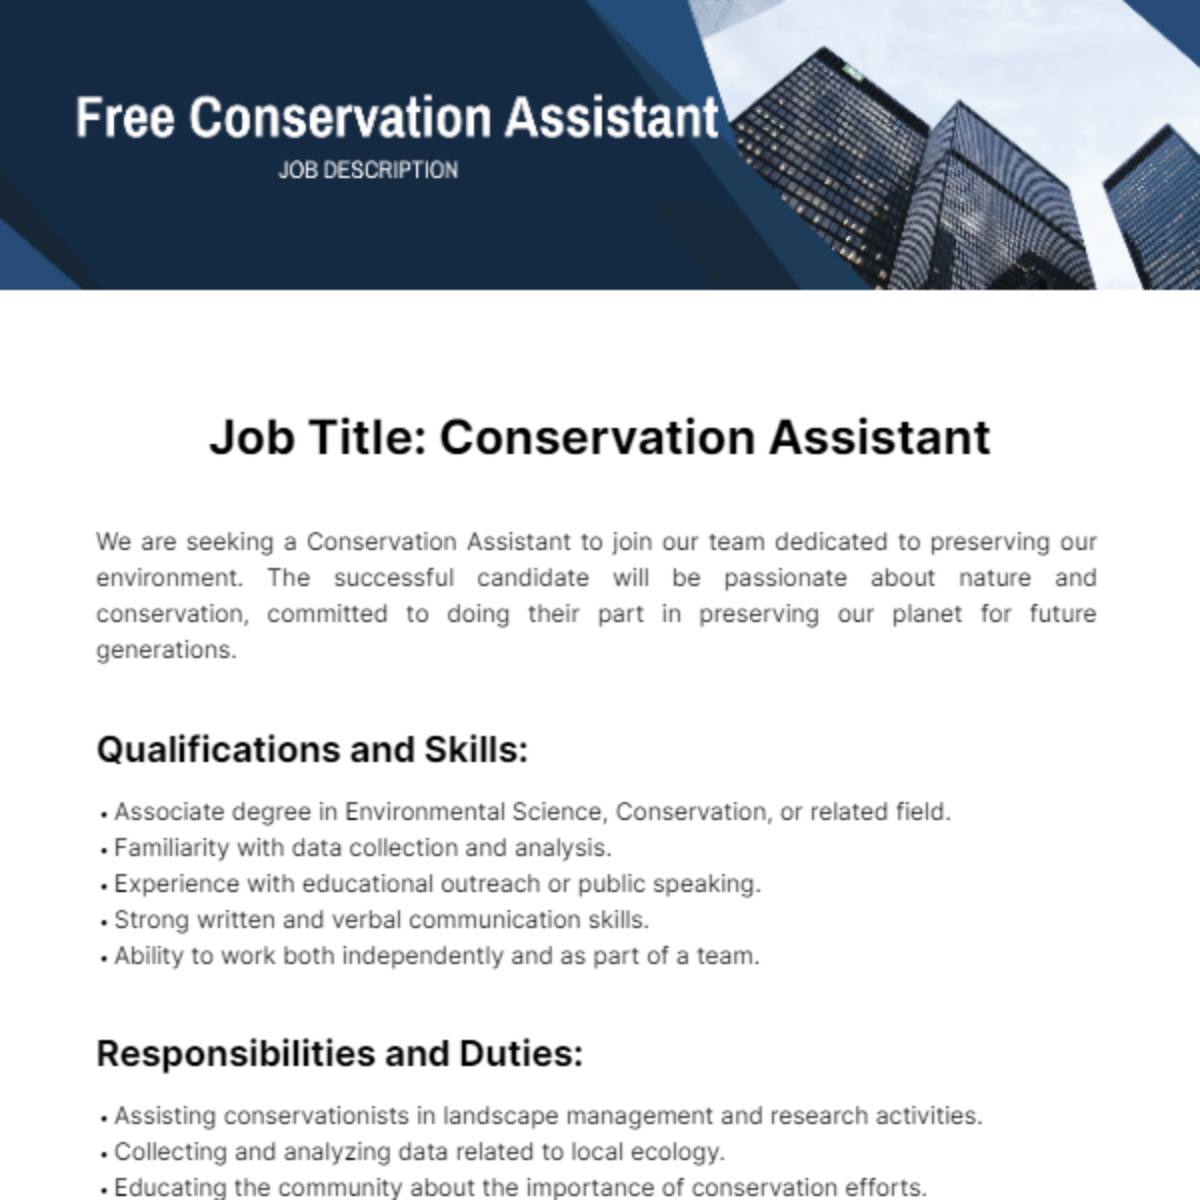 Free Conservation Assistant Job Description Template